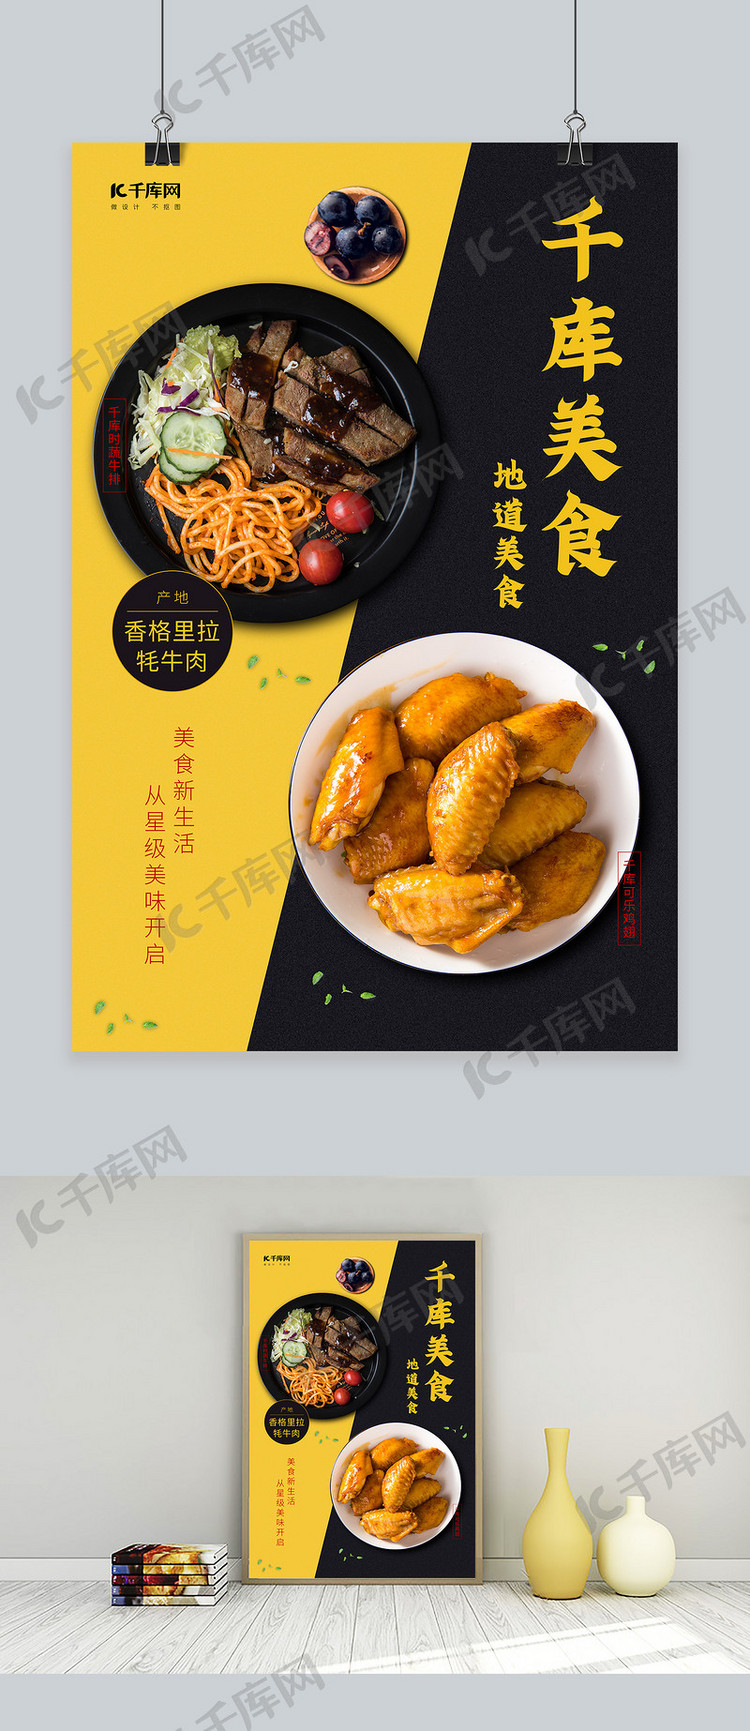 美食牛排鸡翅创意美食宣传促销海报